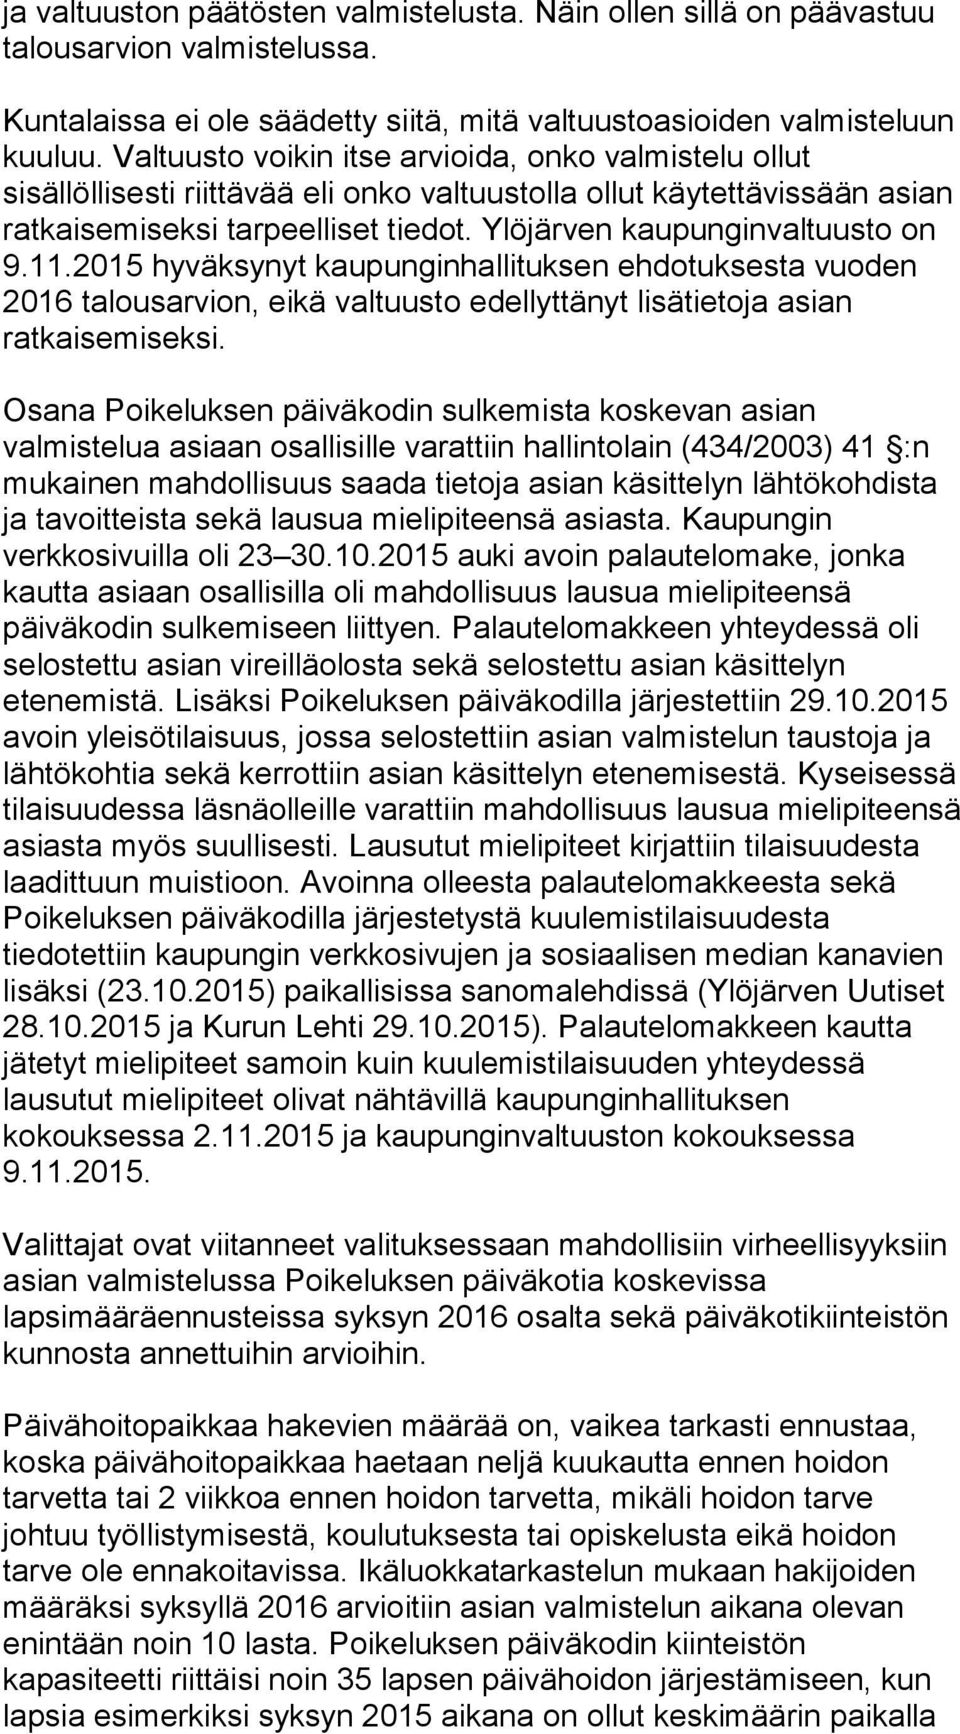 Ylöjärven kaupunginvaltuusto on 9.11.2015 hyväksynyt kaupunginhallituksen ehdotuksesta vuoden 2016 talousarvion, eikä valtuusto edellyttänyt lisätietoja asian ratkaisemiseksi.